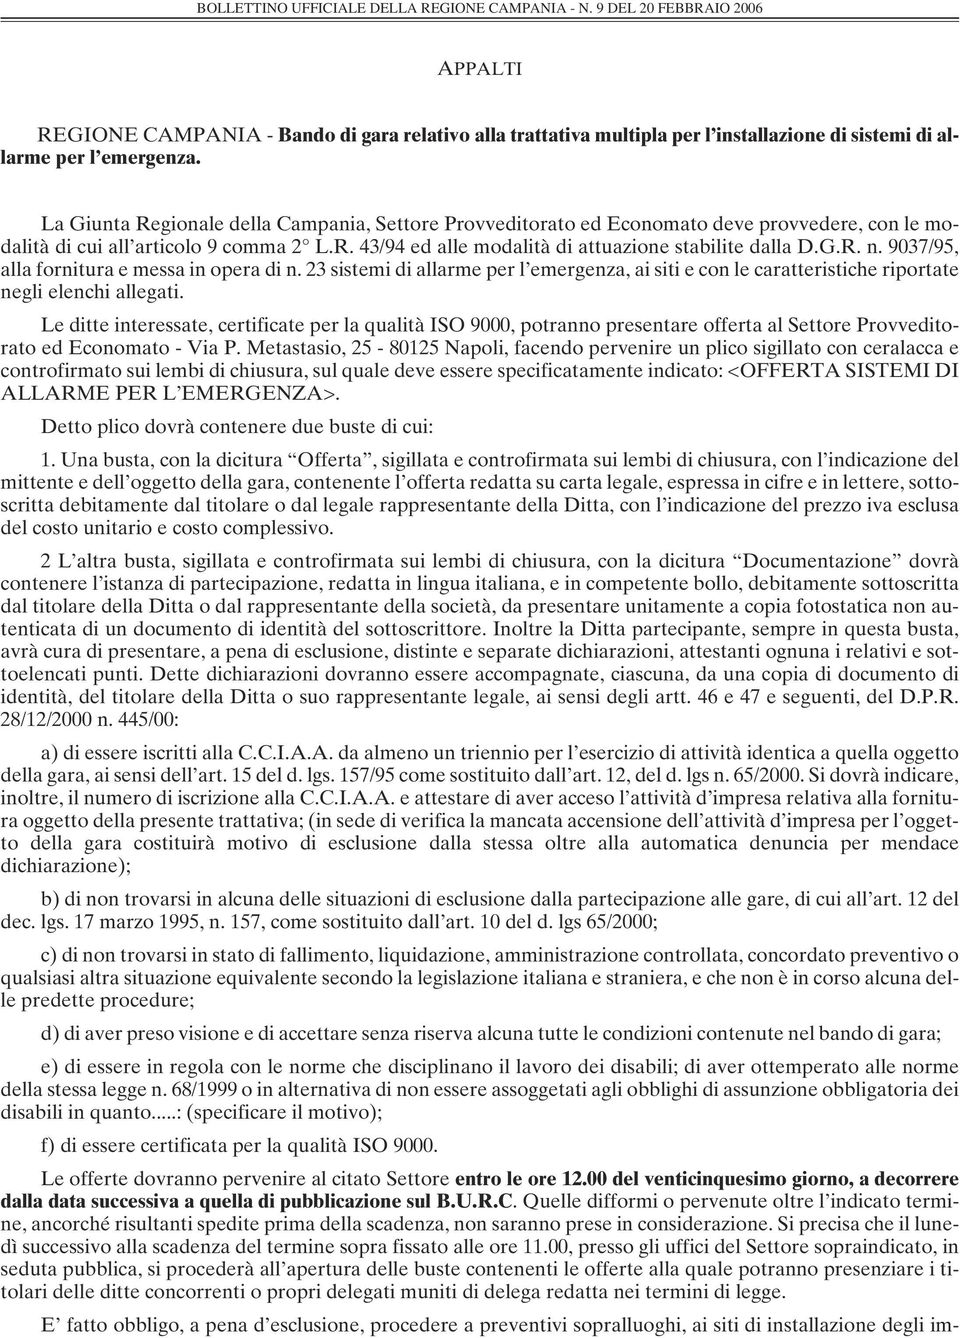 La Giunta Regionale della Campania, Settore Provveditorato ed Economato deve provvedere, con le modalità di cui all articolo 9 comma 2 L.R. 43/94 ed alle modalità di attuazione stabilite dalla D.G.R. n.